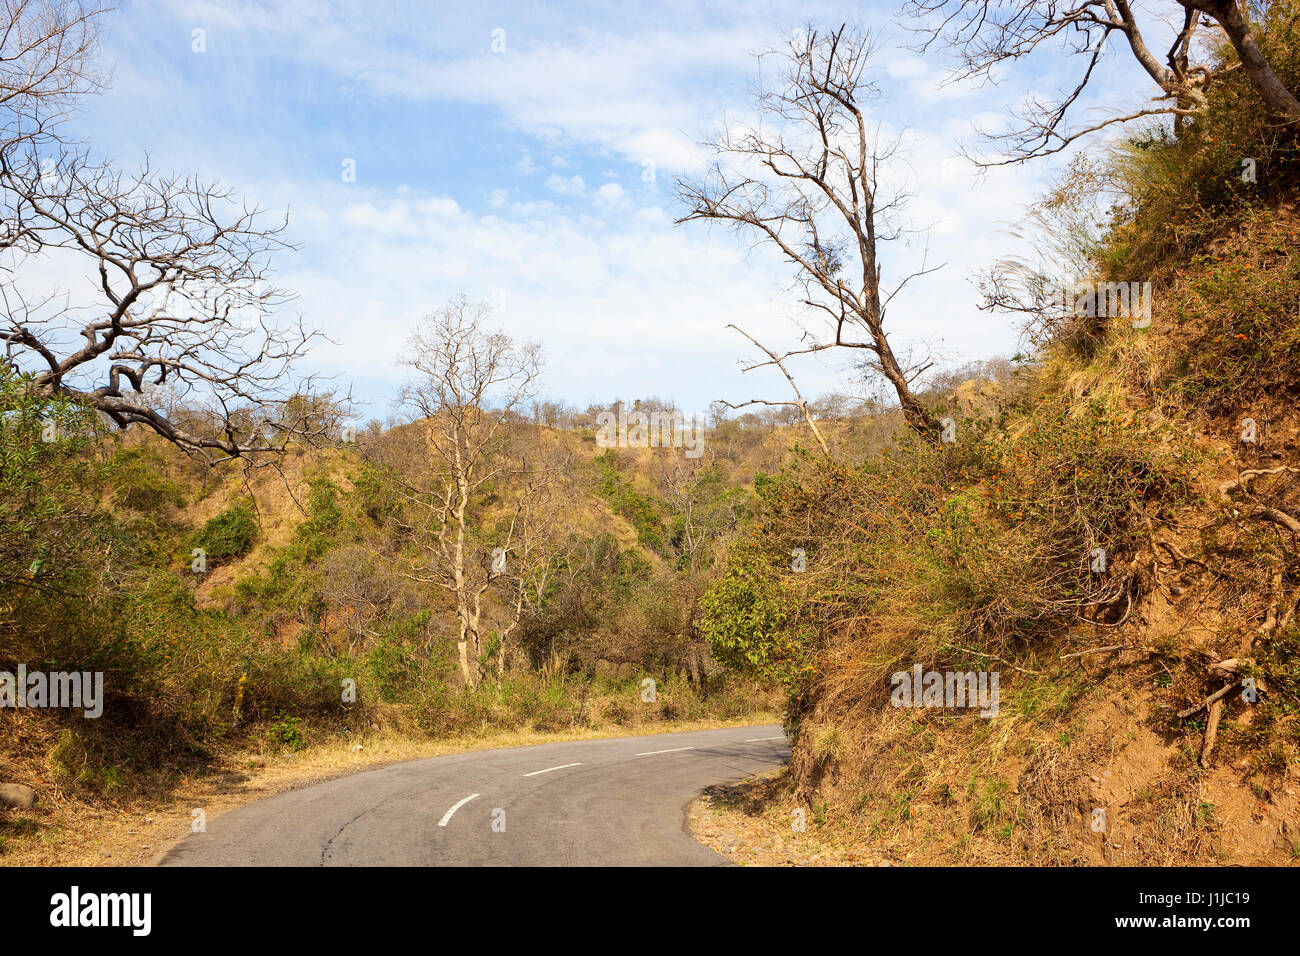 Straße und Landschaft des Naturschutzgebietes Morni Hügel in der Nähe von Chandigarh in Nordindien mit sandigen Hügeln und Vegetation bei bewölktem Himmel blau Stockfoto